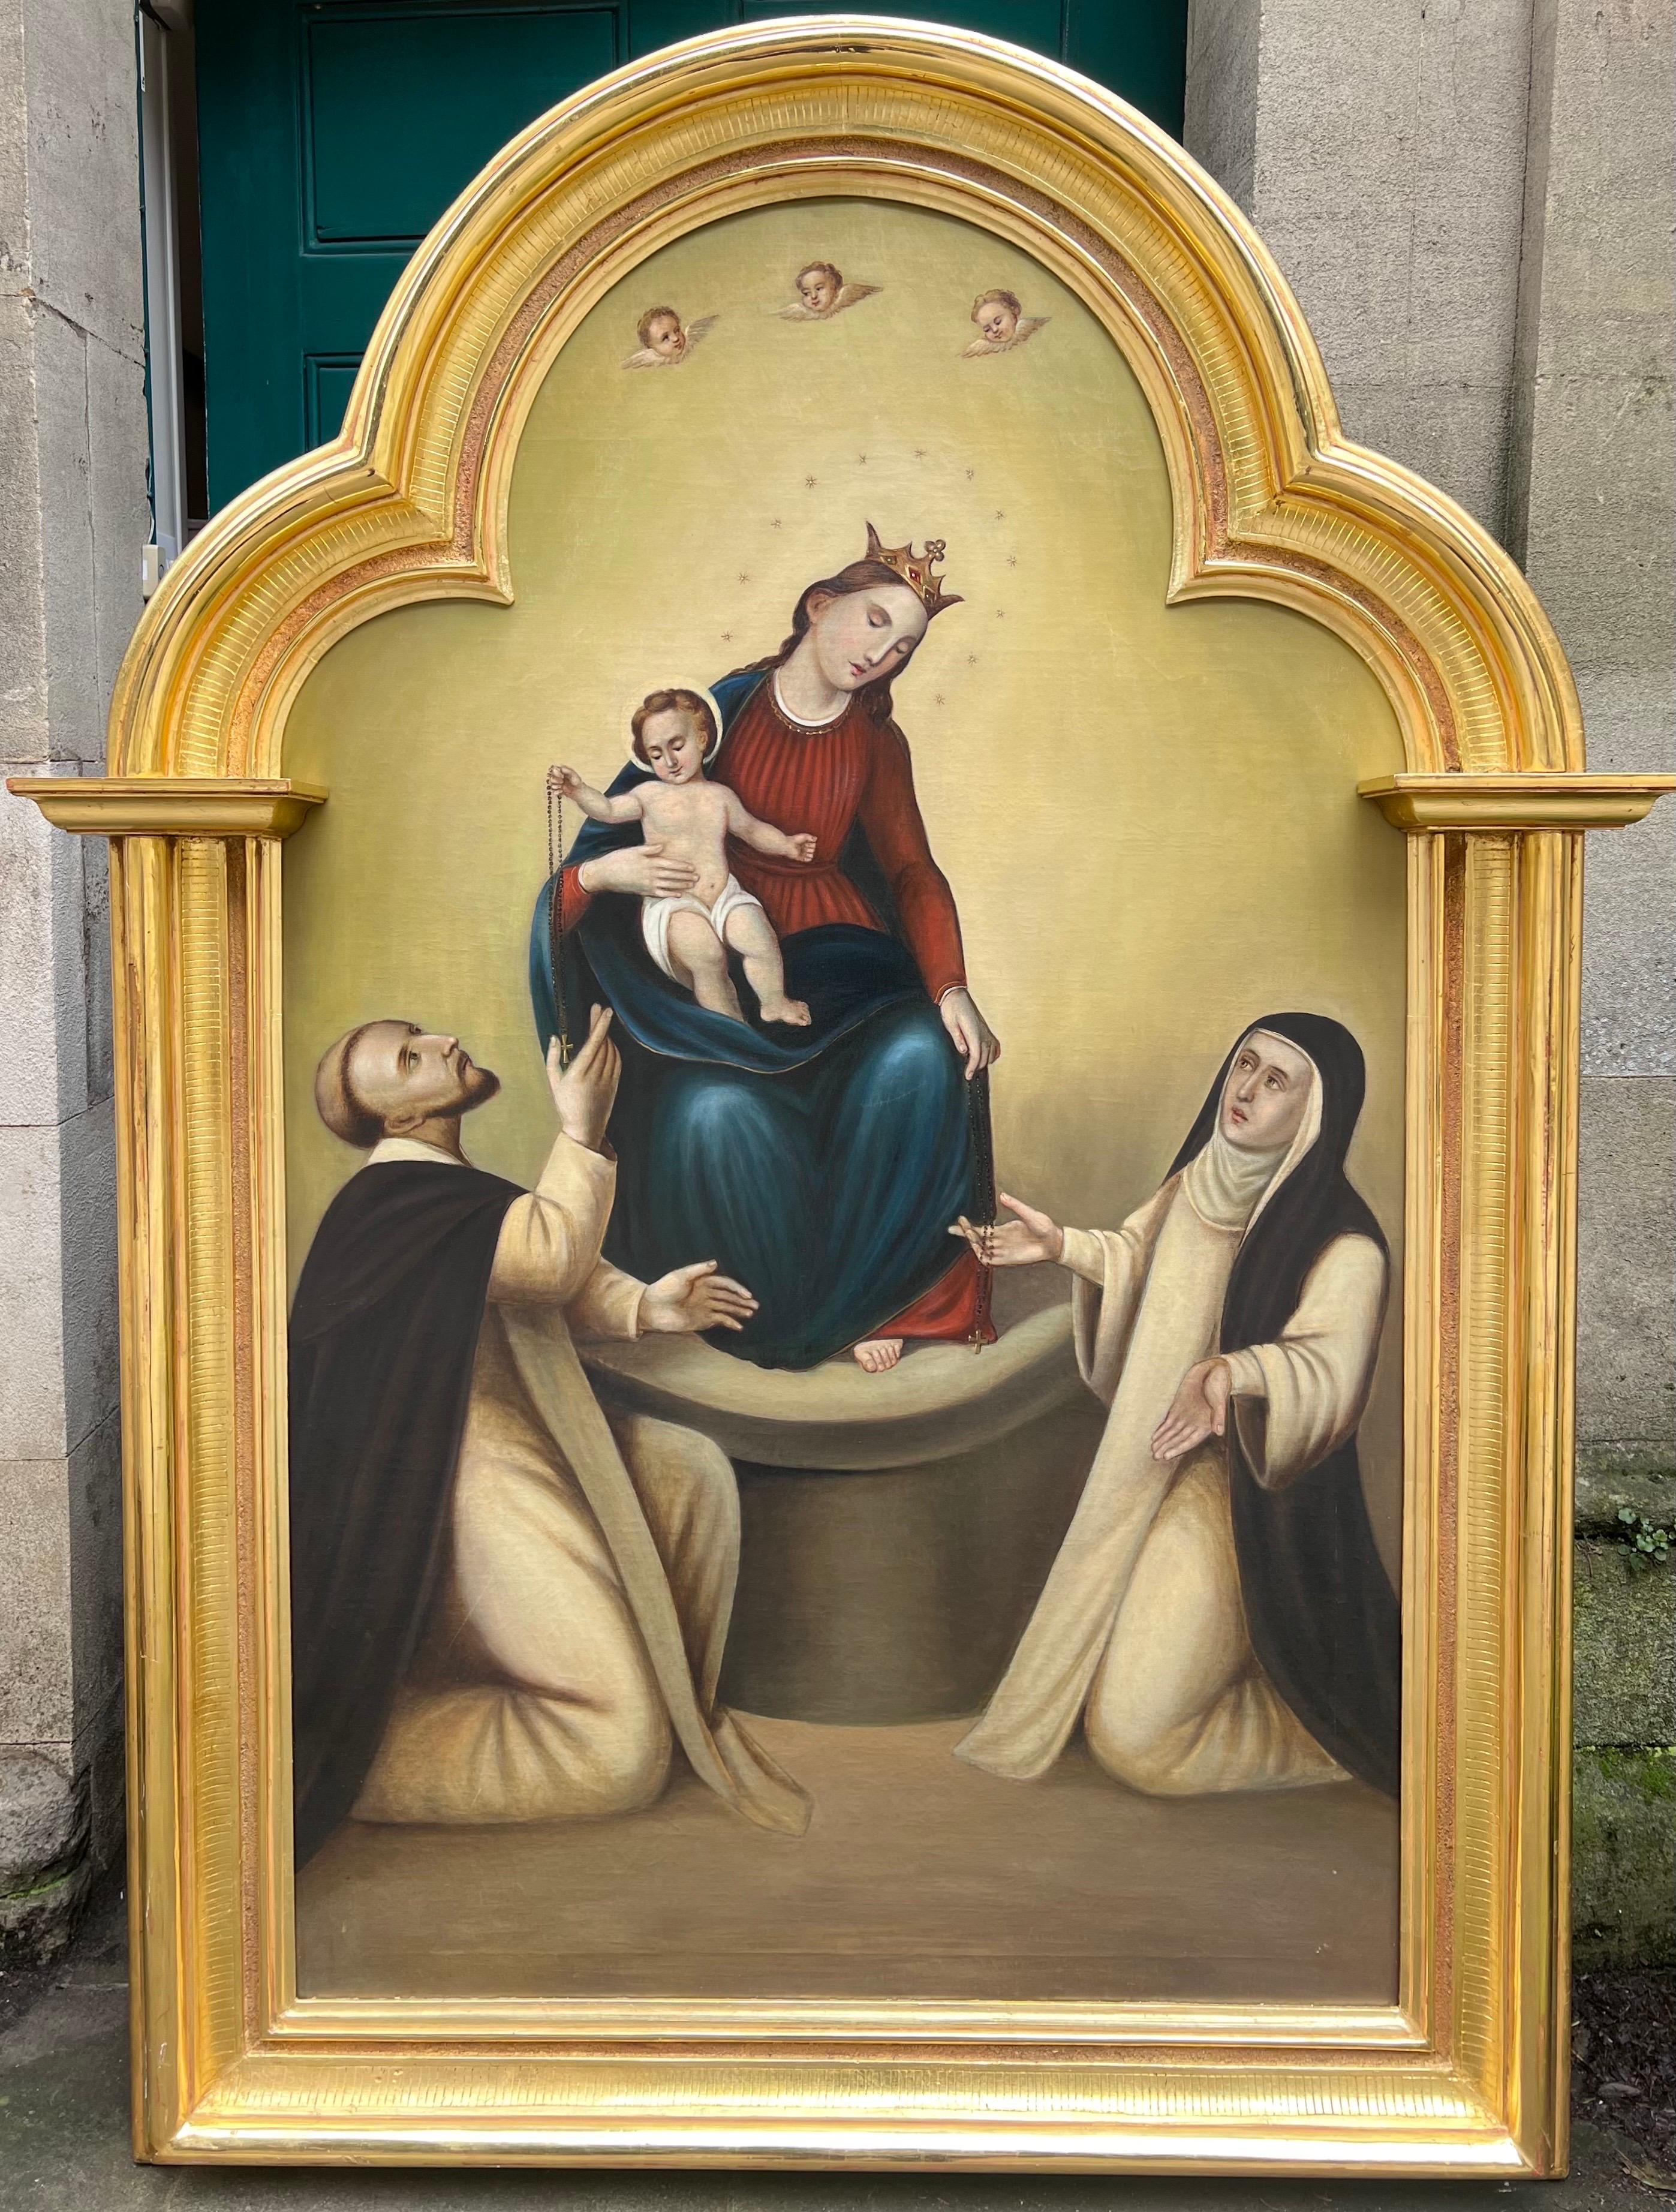 German Baroque Figurative Painting – Enormes religiöses deutsches Ölgemälde Anbetung der Madonna & des Christuskindes